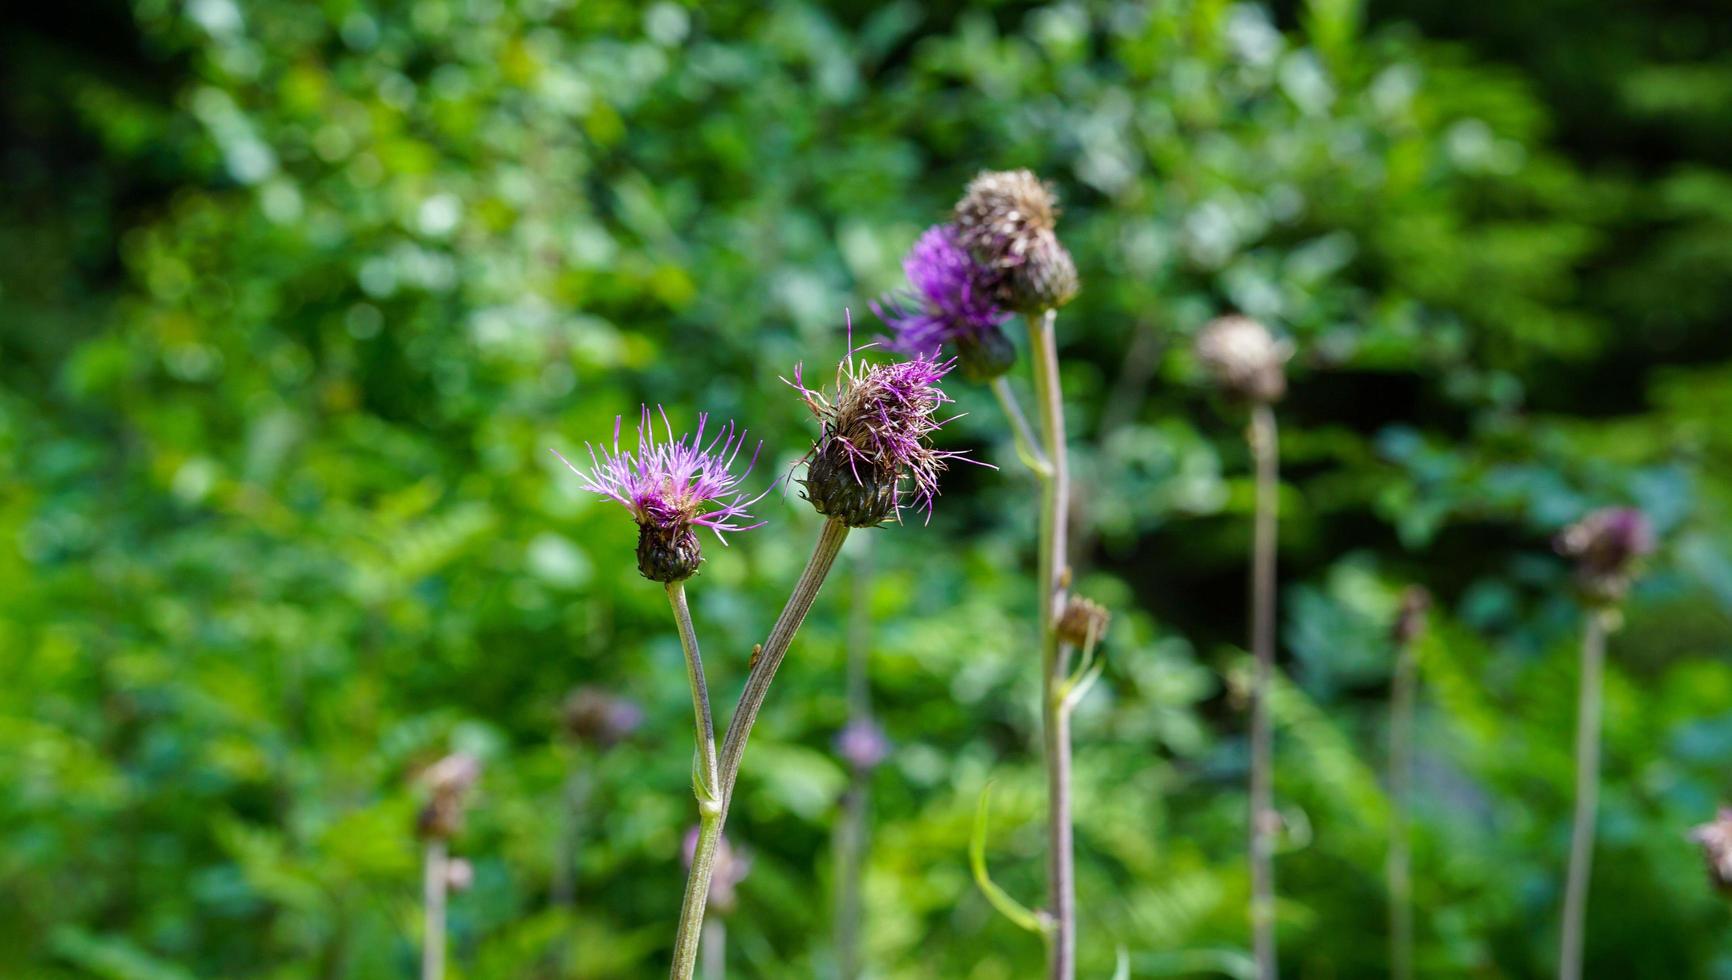 Mikrobild einer wilden violetten Blume, die während der Sommersaison in der europäischen Natur wächst foto